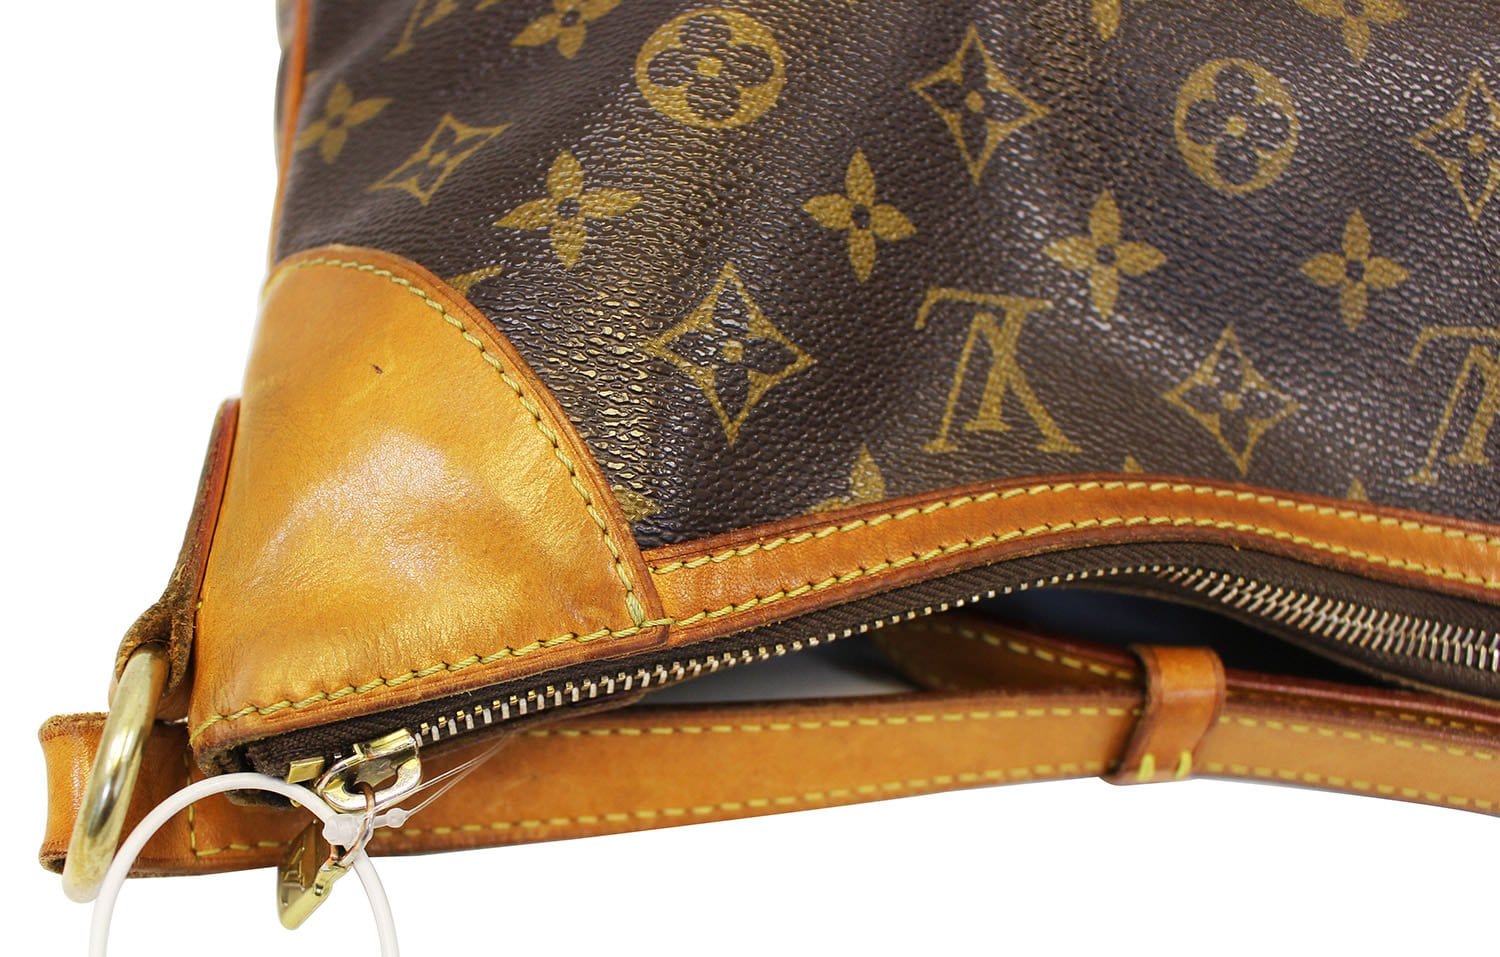 Louis-Vuitton-Monogram-Delightful-MM-Shoulder-Bag-M40353